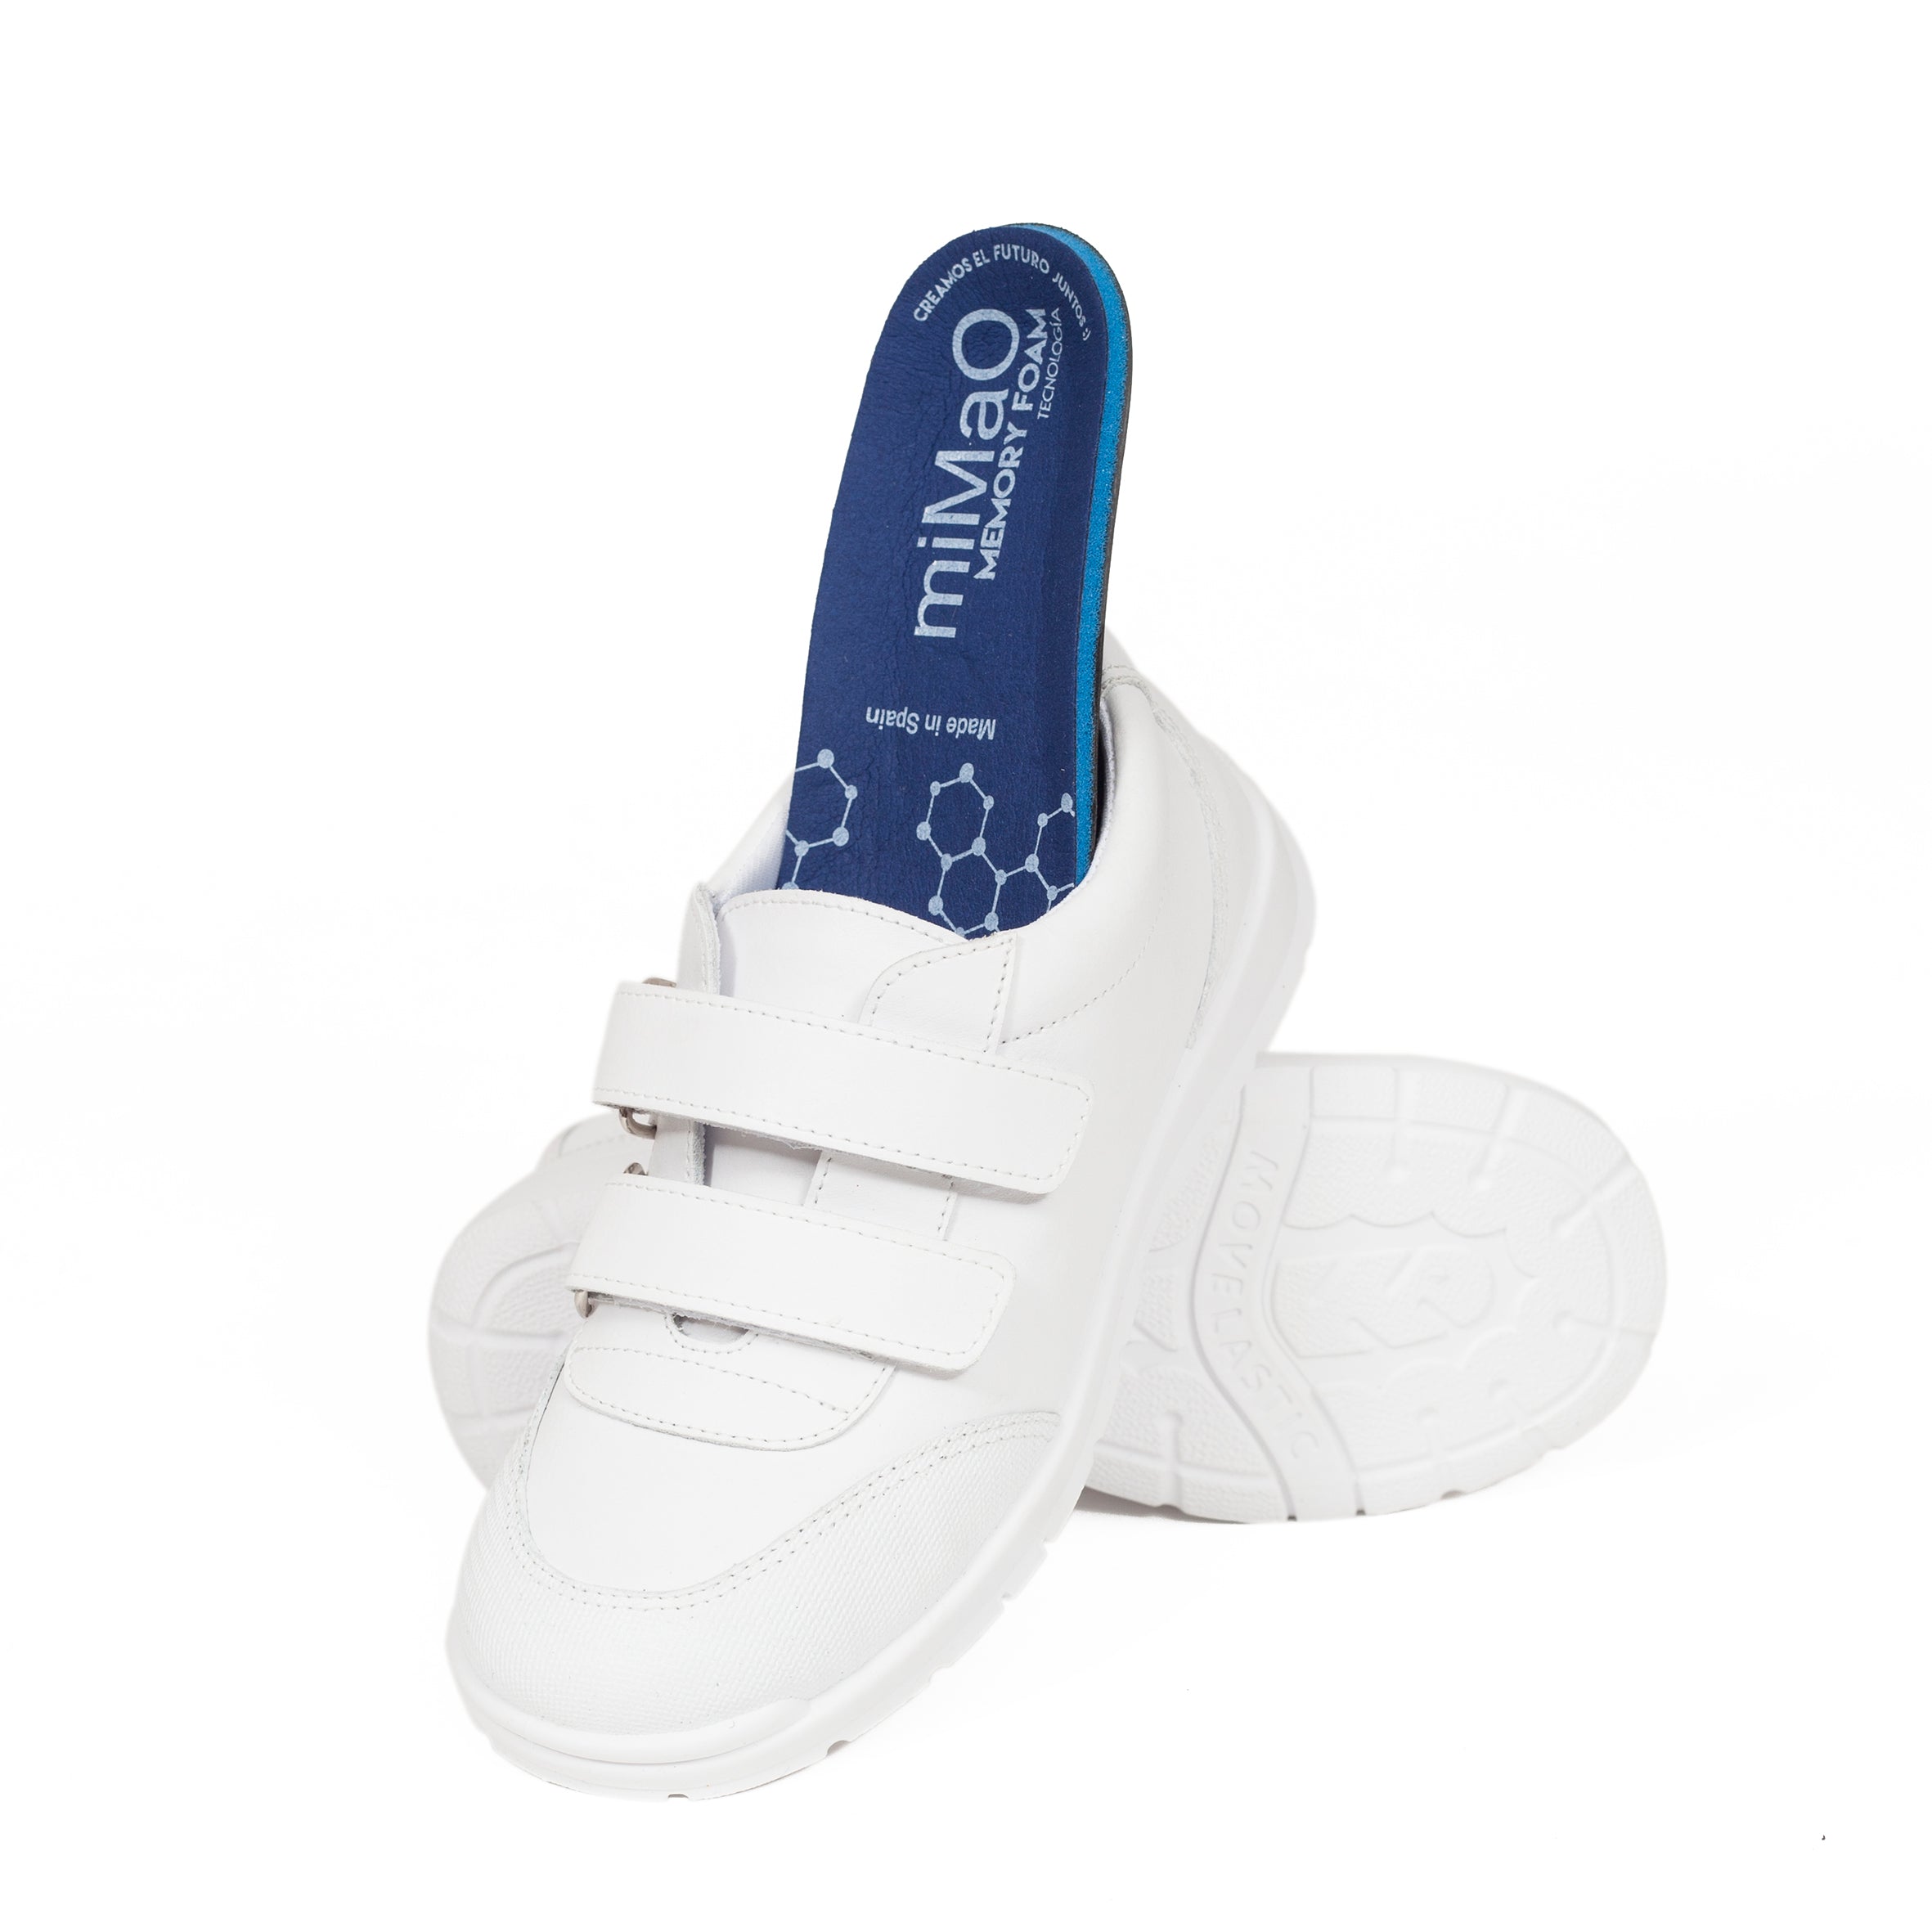 Zapatos colegiales para uniforme escolar – Piel Lavable marca miMaO